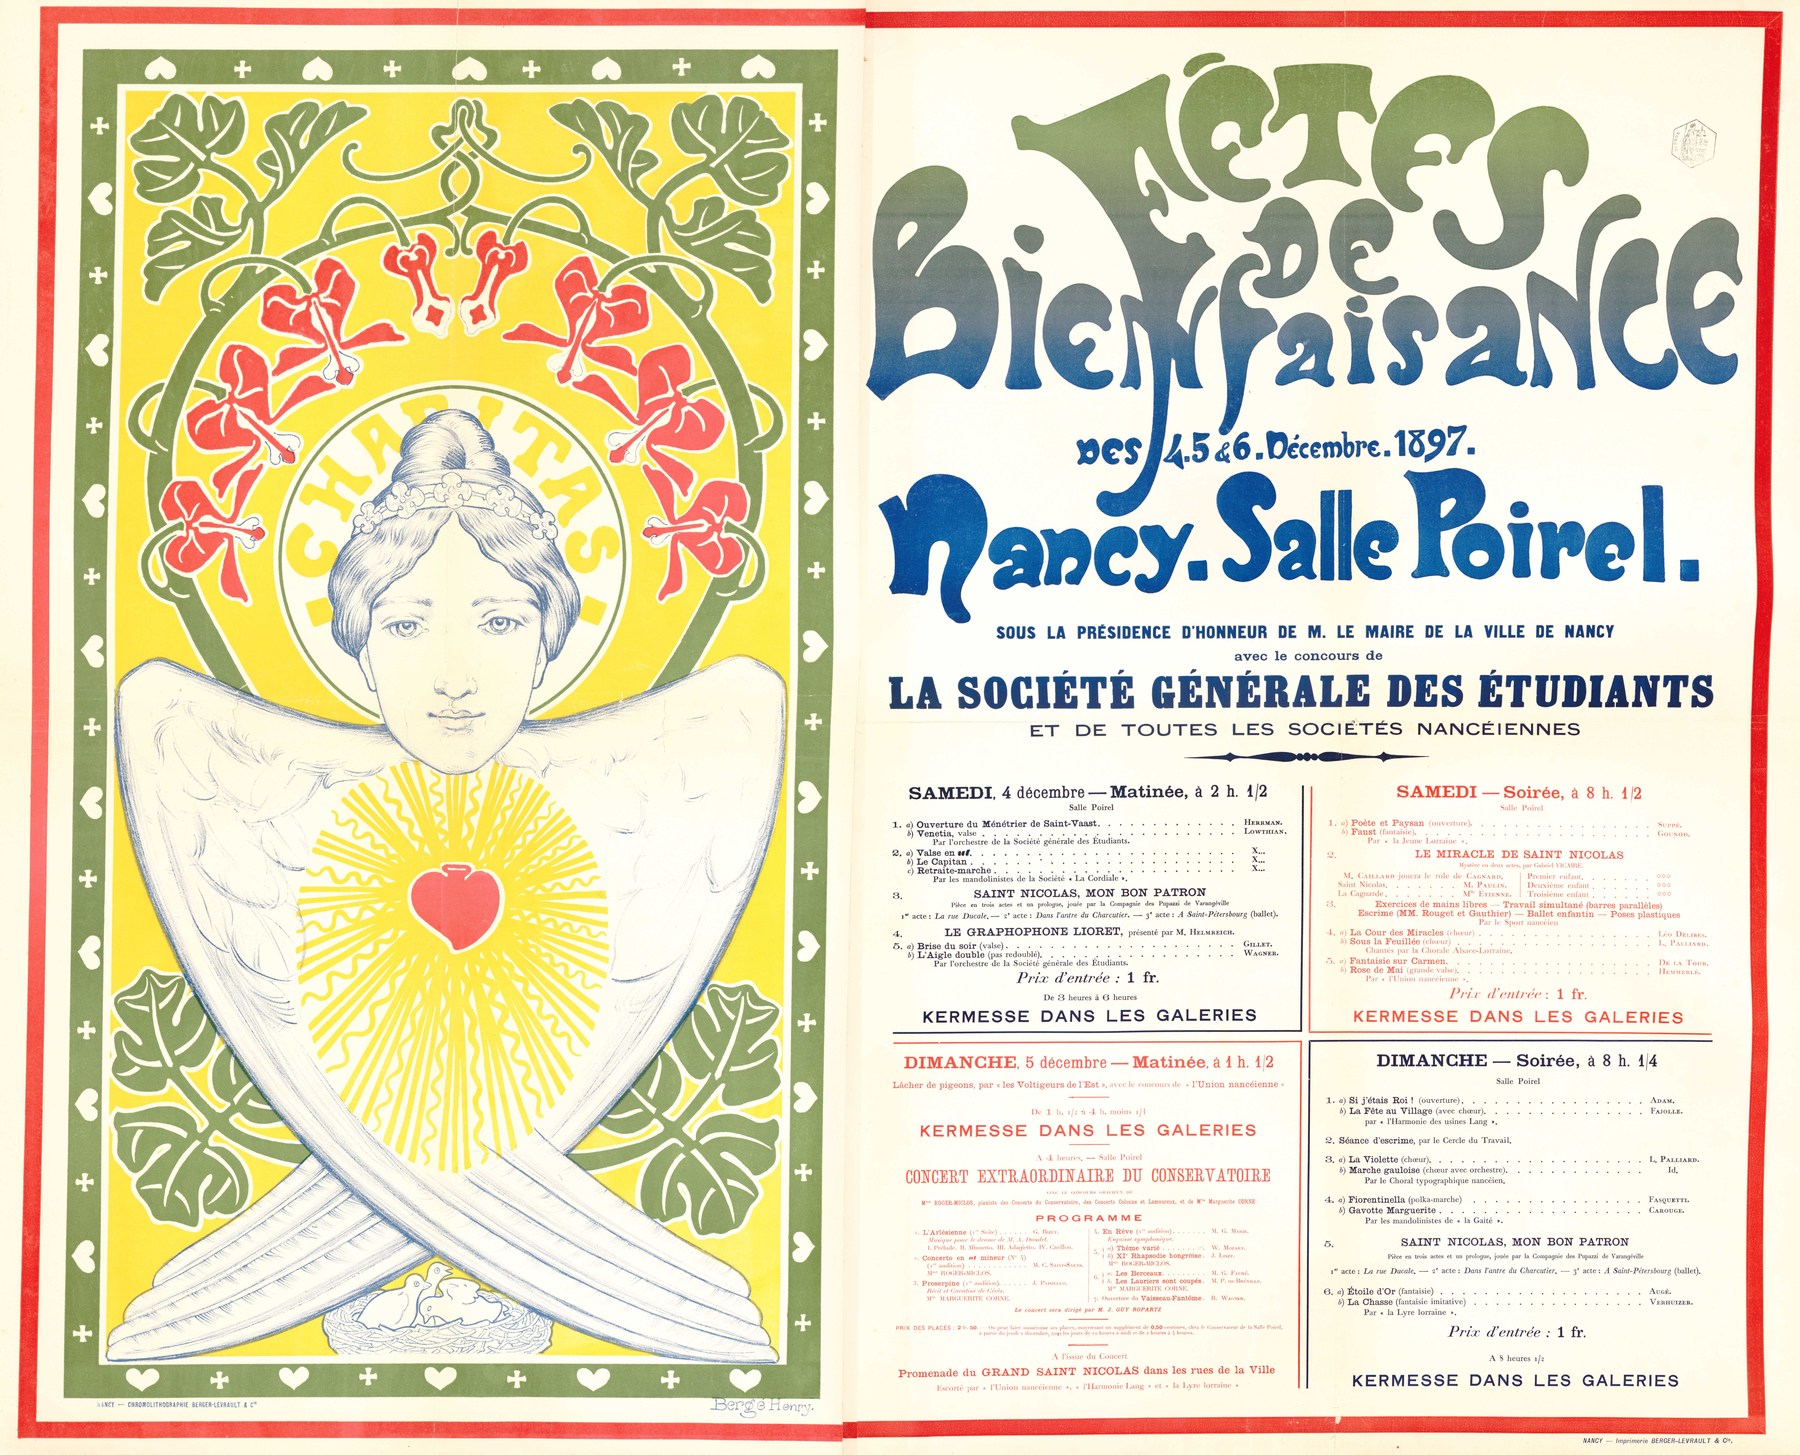 Contenu du Fêtes de bienfaisance des 4, 5 & 6 décembre 1897 Nancy, salle Poirel